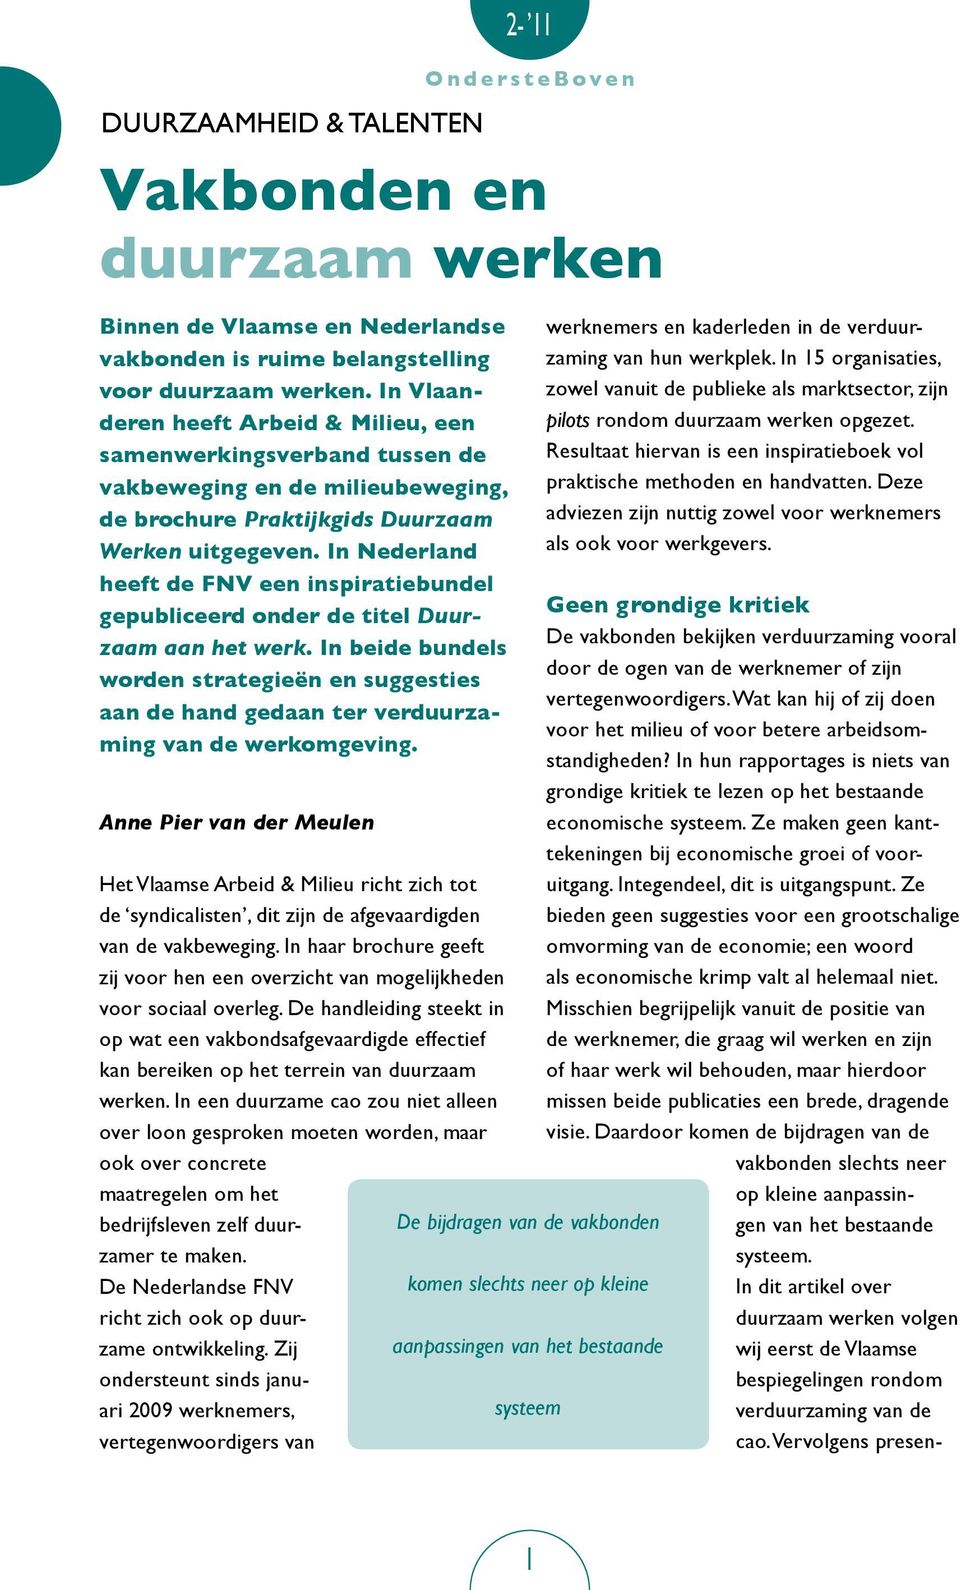 In Nederland heeft de FNV een inspiratiebundel gepubliceerd onder de titel Duurzaam aan het werk.